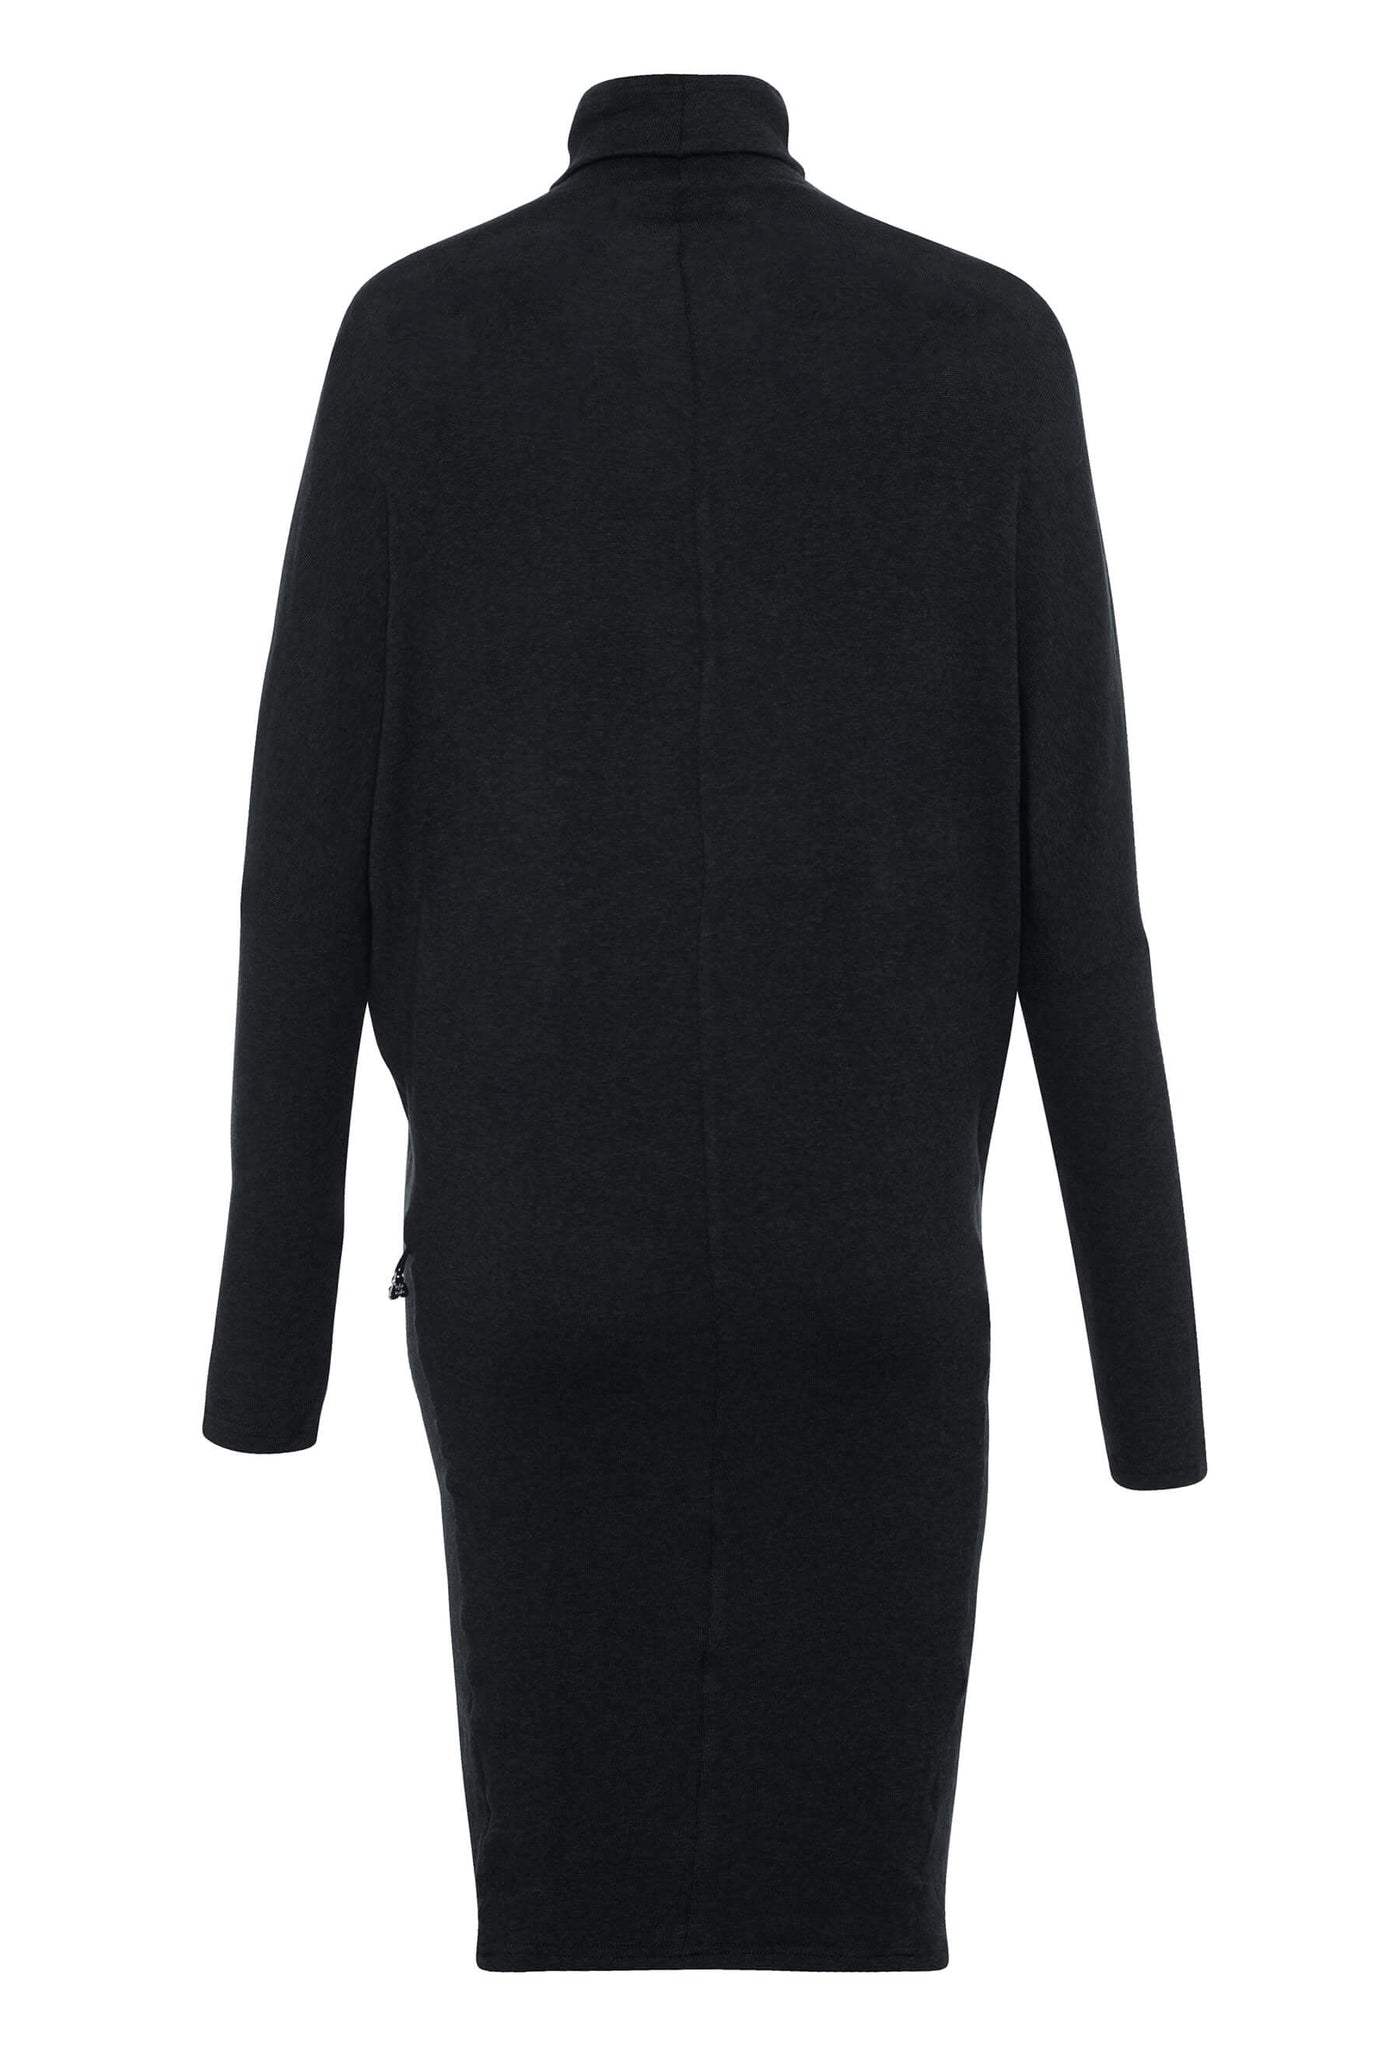 Robe longue Vanessa à col roulé, couleur noire, produit fait au Québec par KSL!